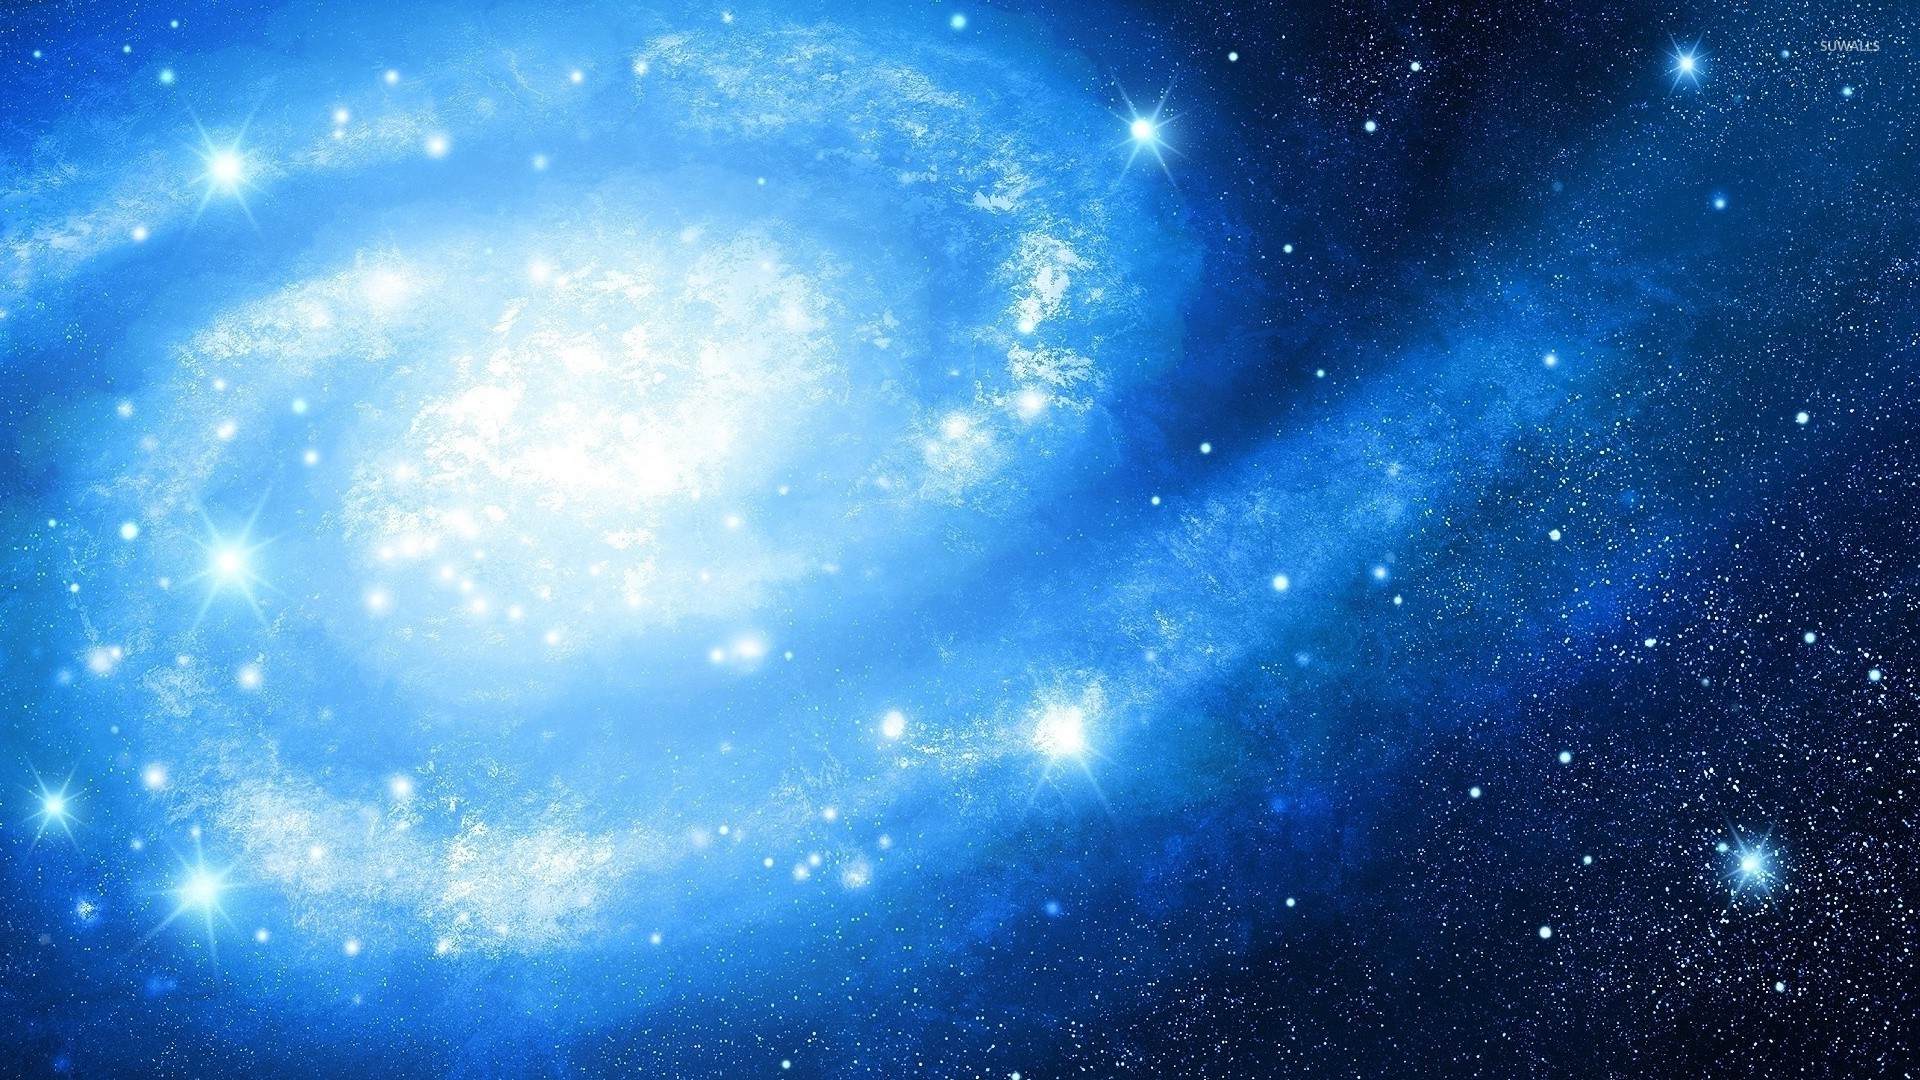 銀河の壁紙19x1080 空 青い 宇宙 雰囲気 天体 Wallpaperuse